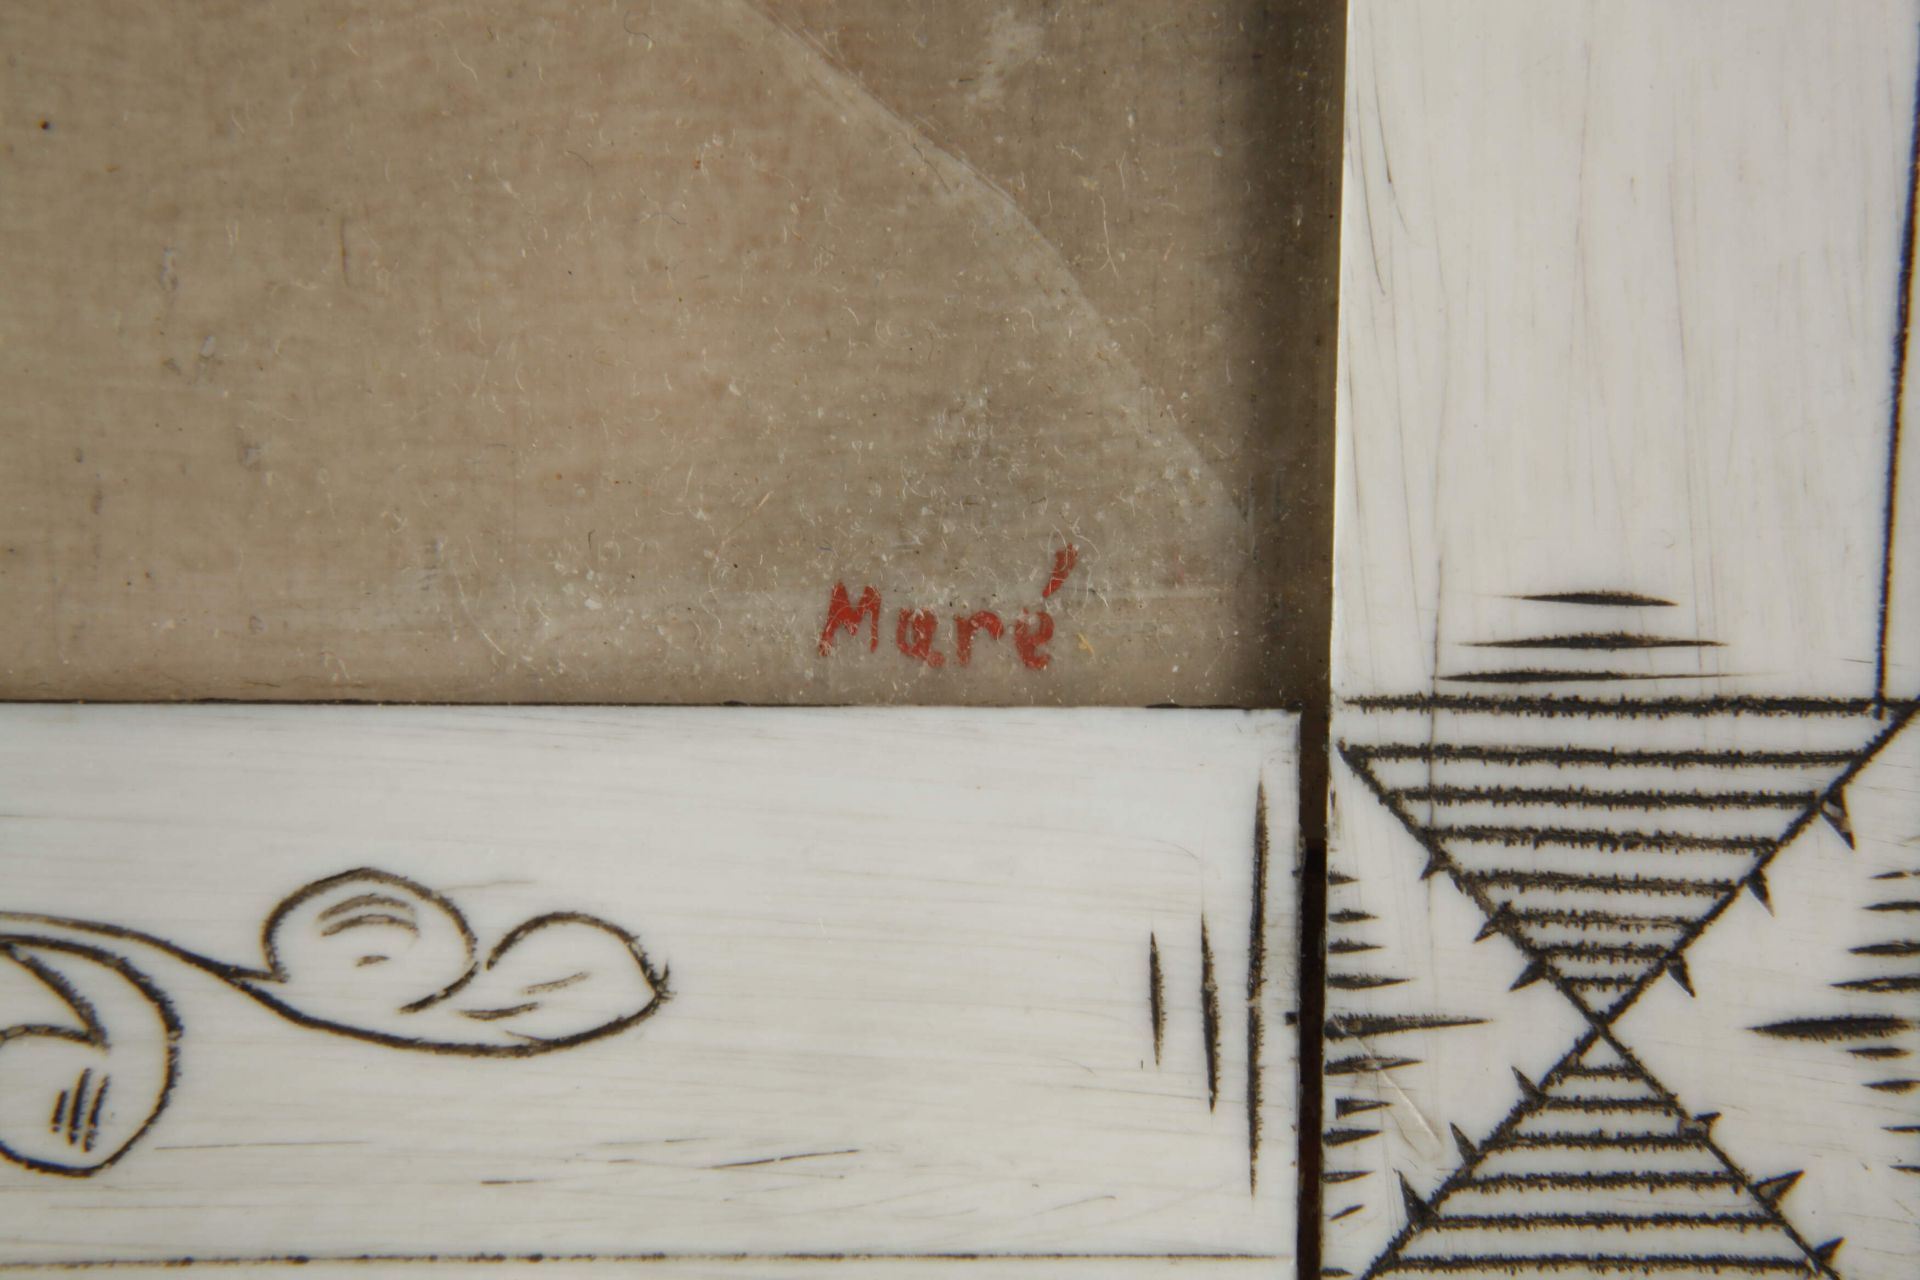 Maré, Miniature Portrait of a Girl  - Image 3 of 3